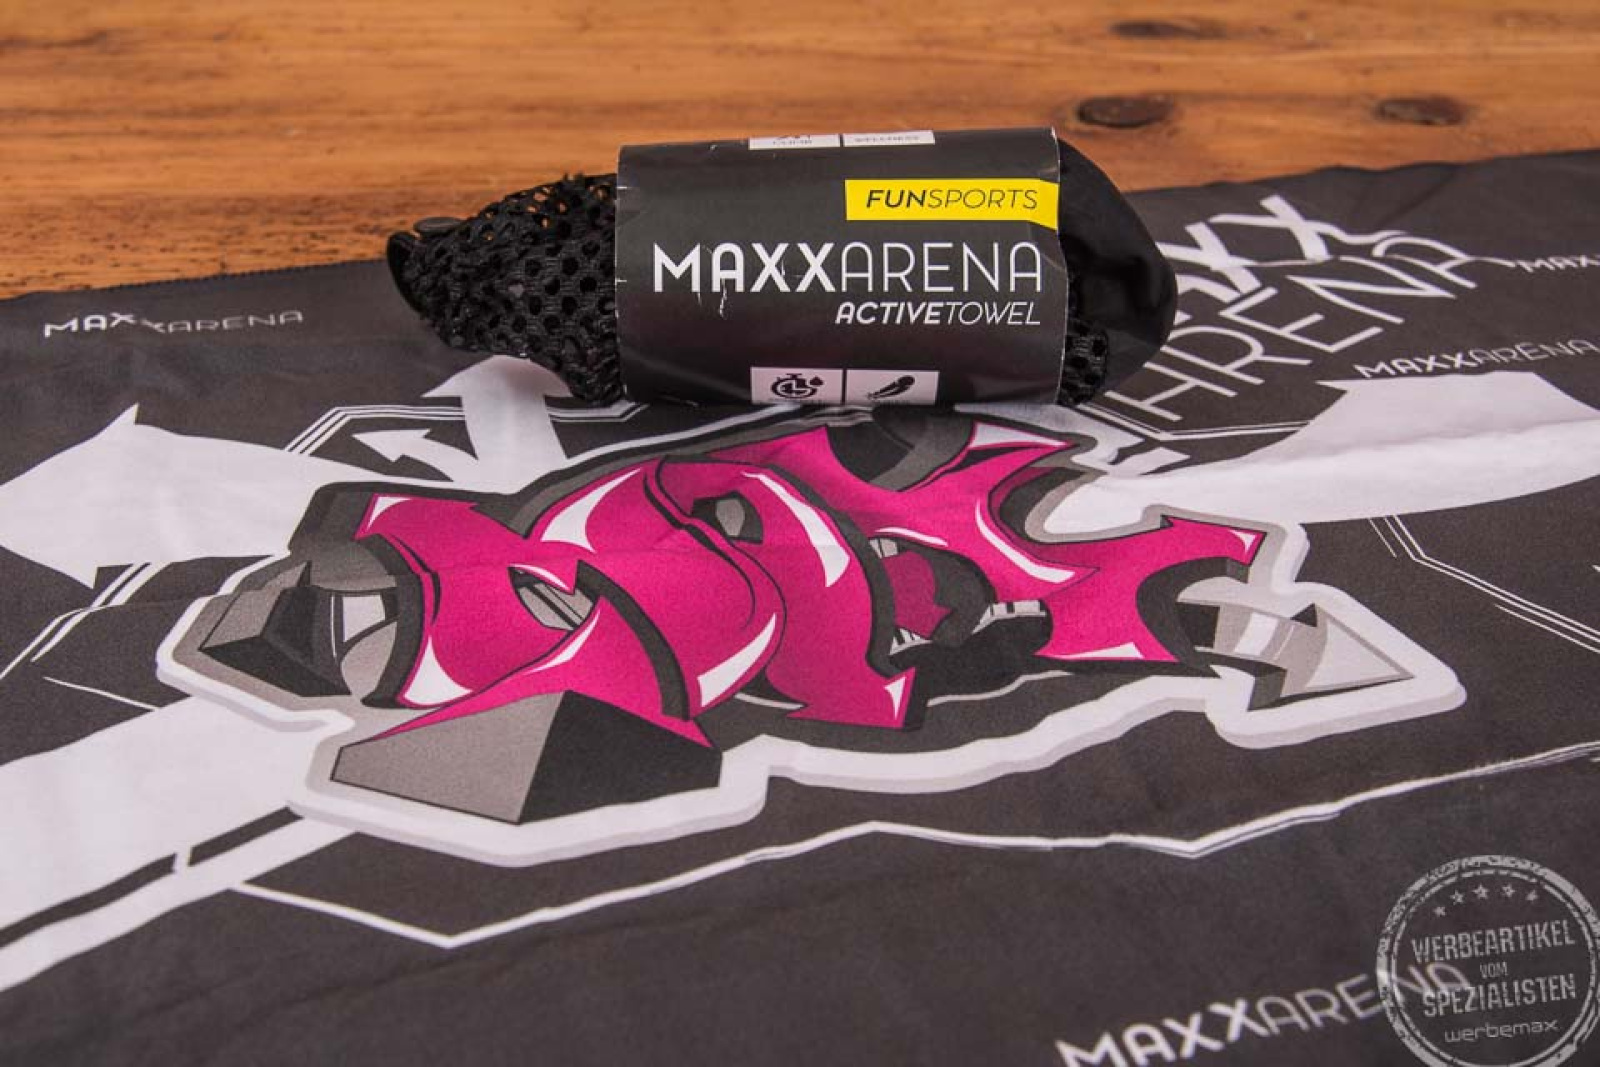 Ausgebreitetes ActiveTowel Handtuch mit Fotodruck Maxx Arena als Werbegeschenk.